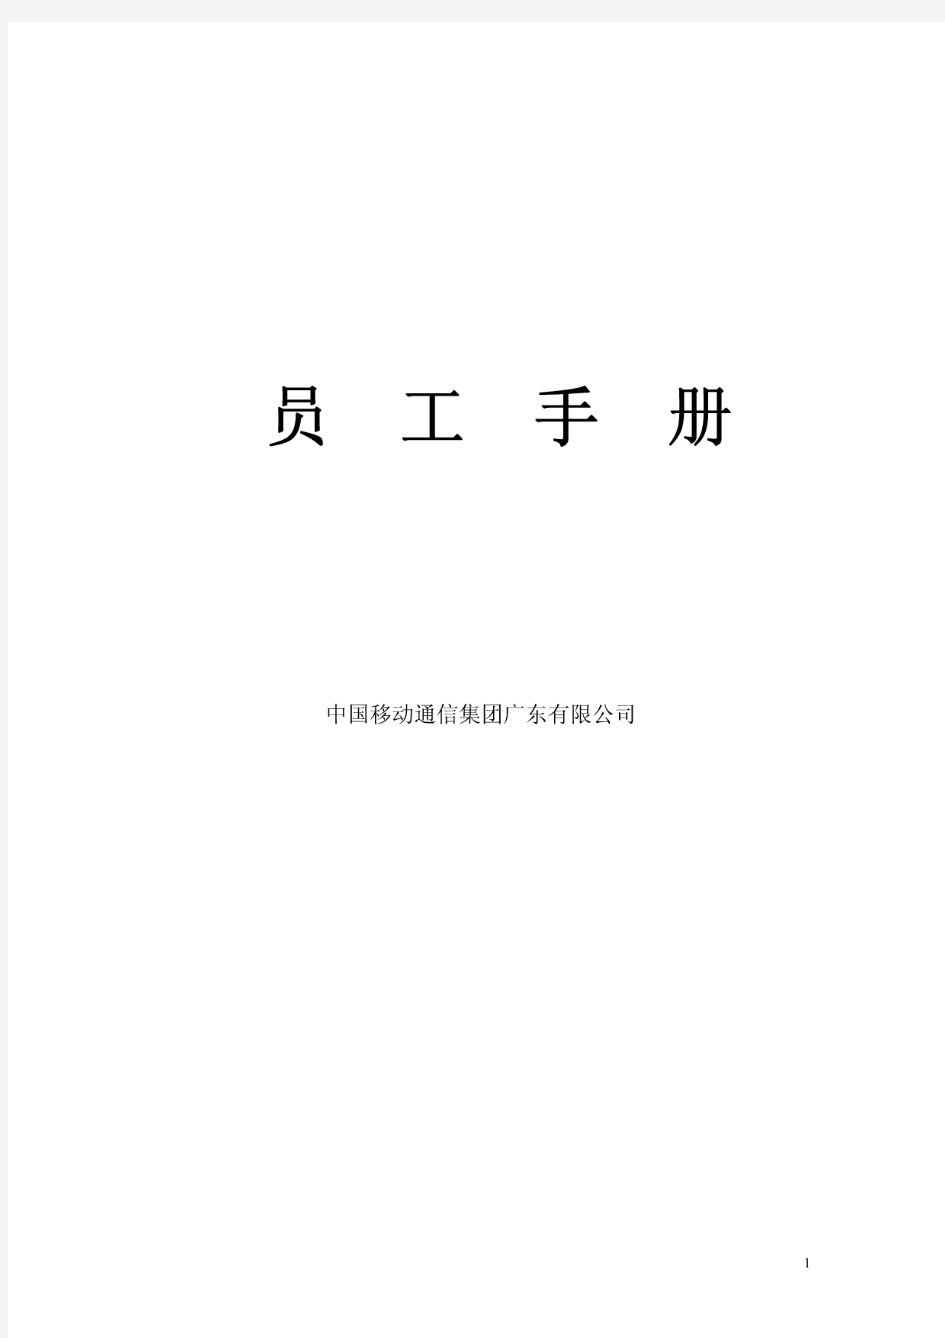 中国移动员工手册